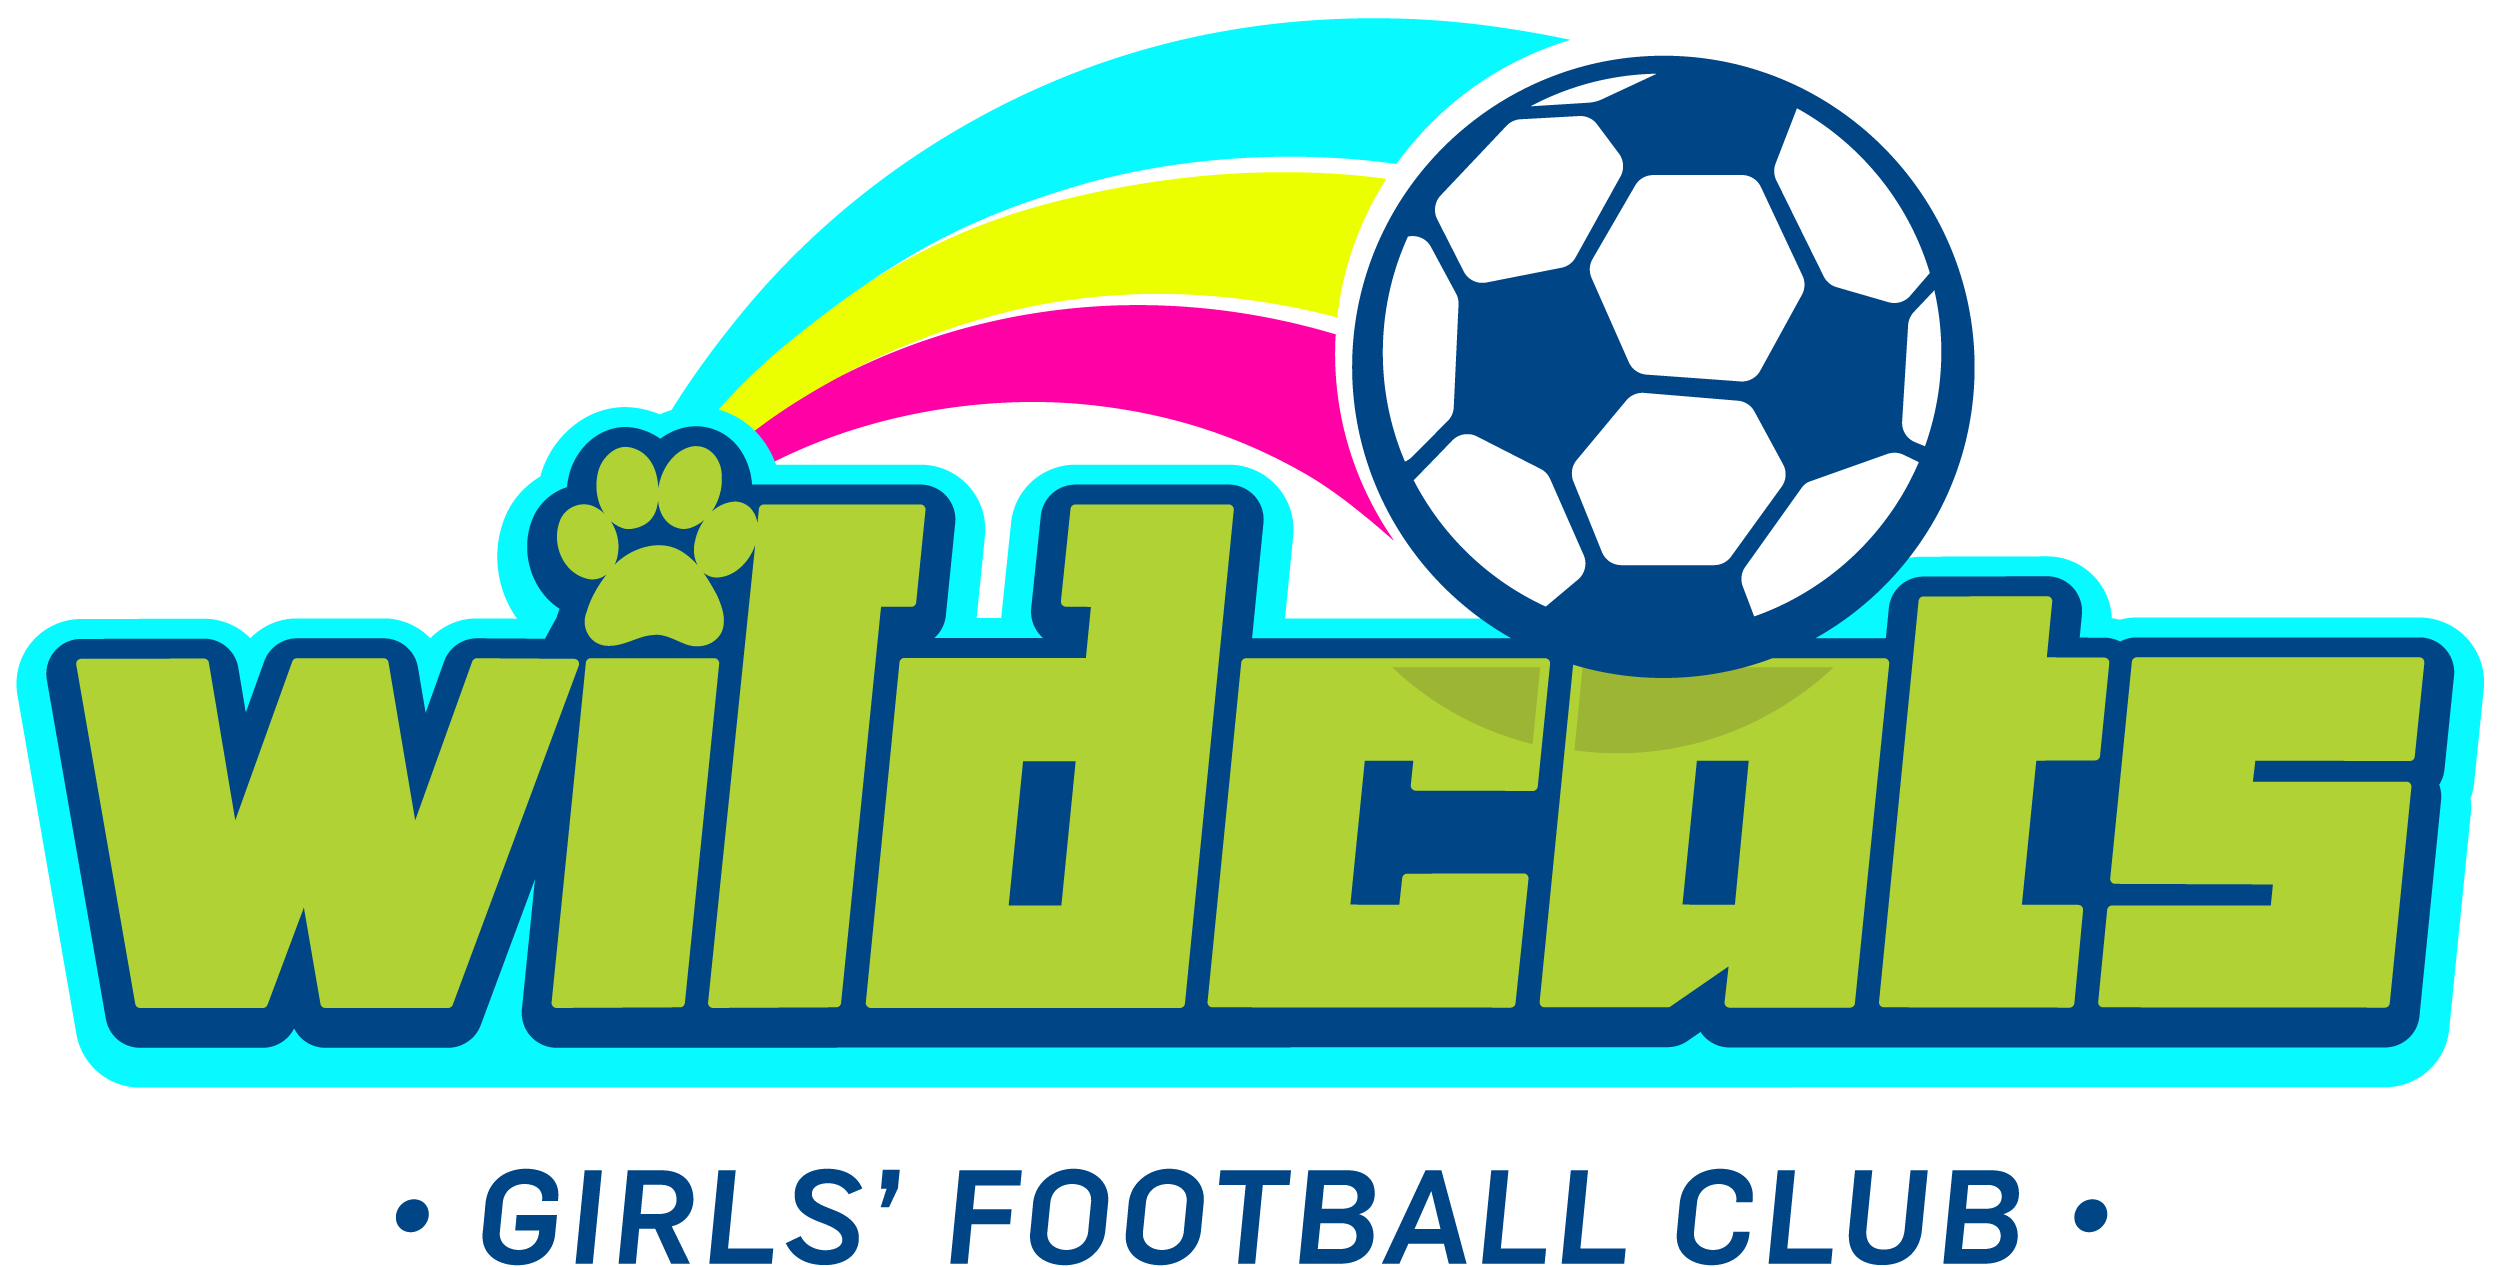 Wildcats Girls' Football - Sse Wildcats Girls Football Clubs Clipart (2500x1267), Png Download